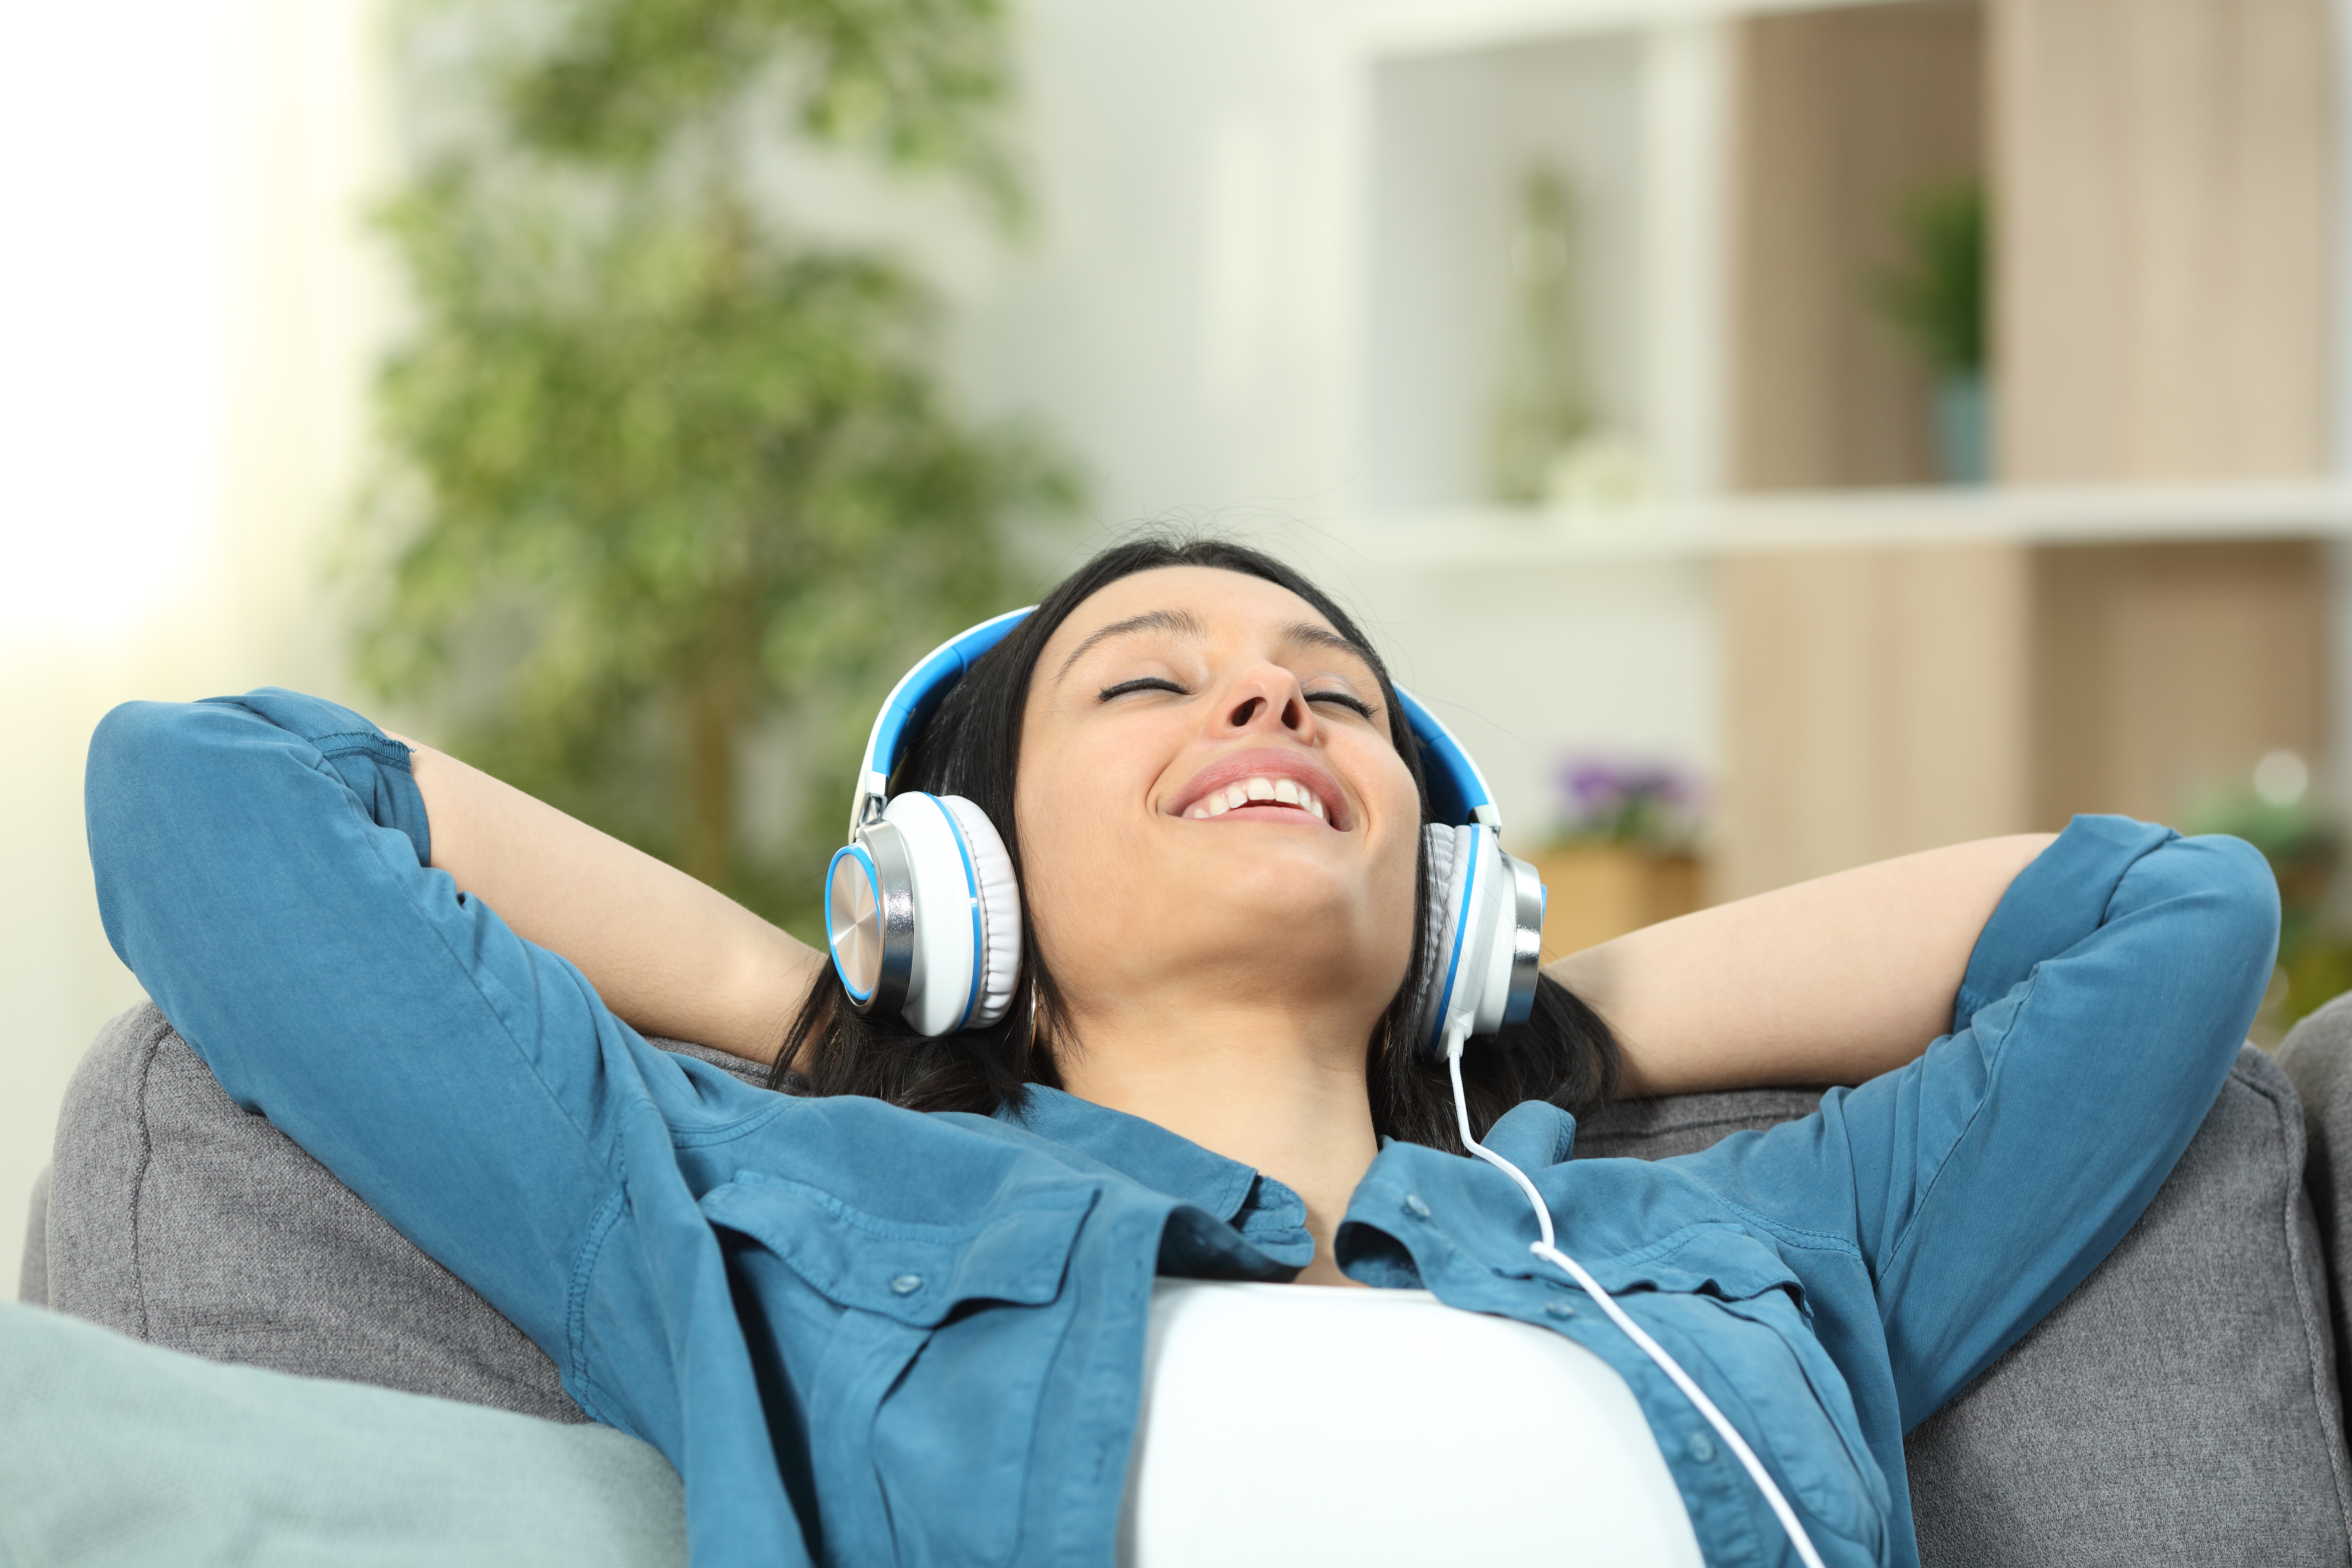 Музыка сиди качество. Музыка для отдыха. Фото на кресле слушает музыку. Человек слушает расслабляющую музыку картинки. Картинки девушек отдыхающих под музыку.